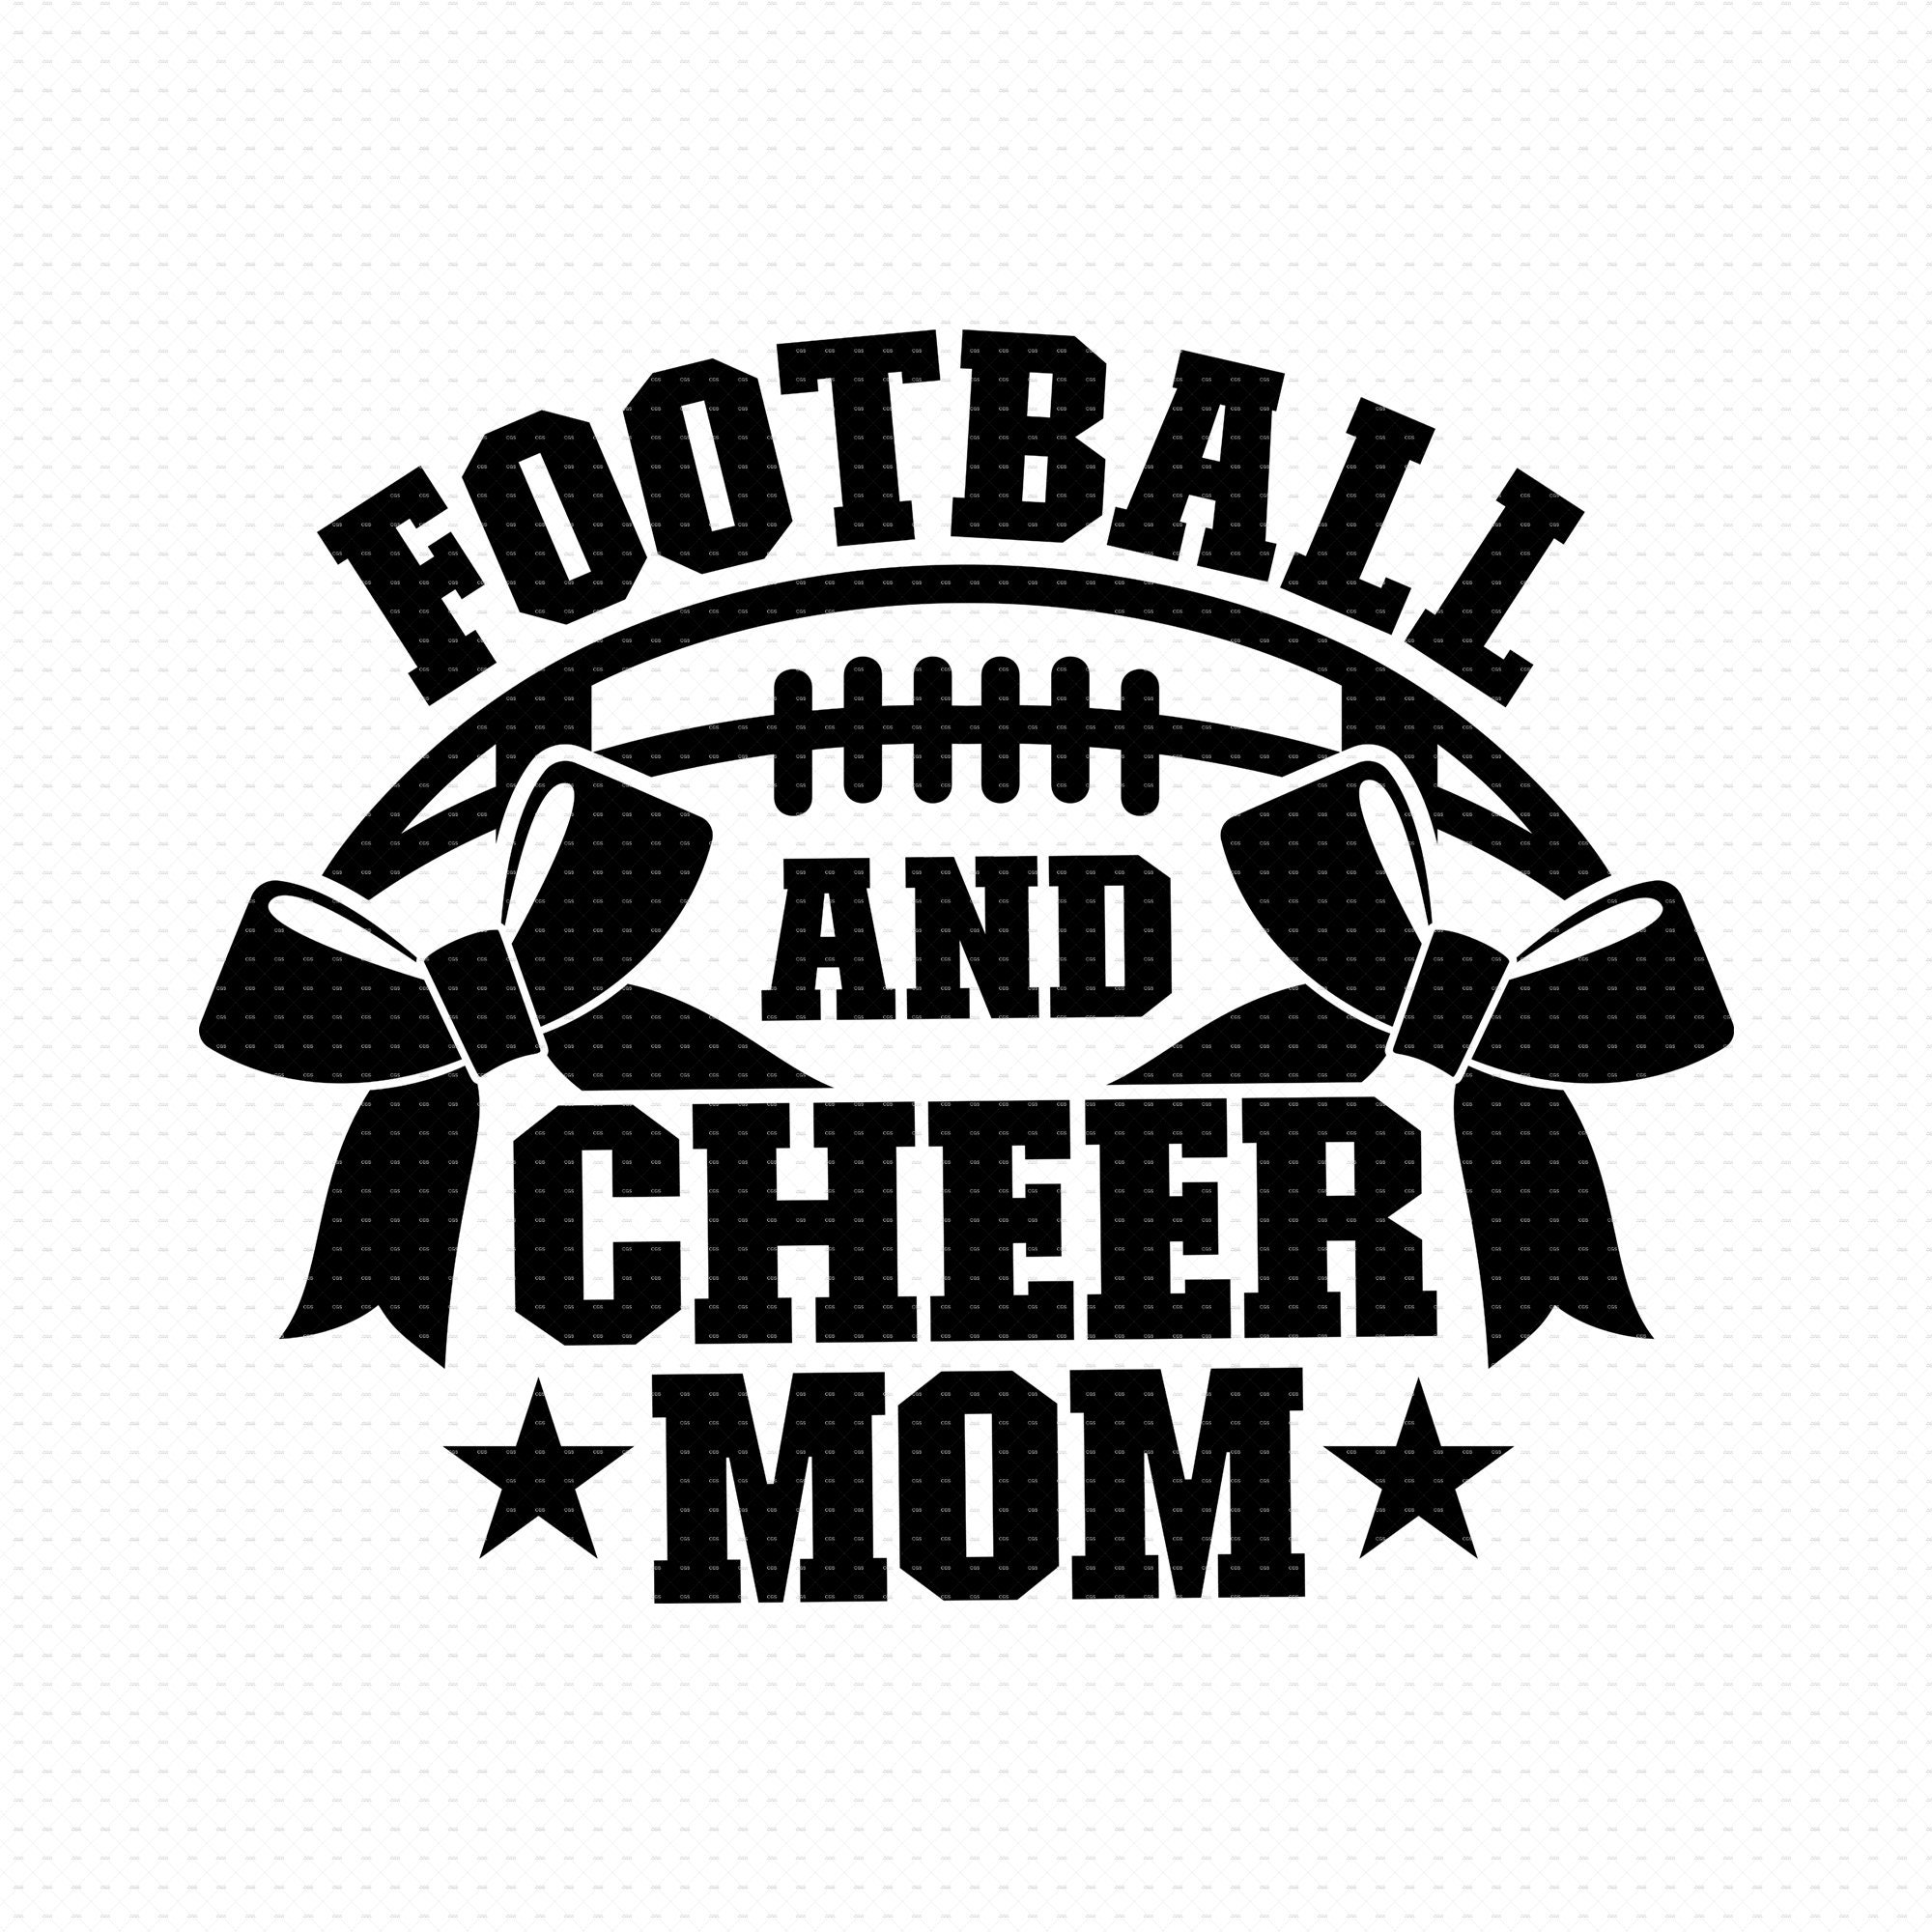 Football Cheer Mom Svg Cheer Mom Svg Cheerleader Svg Football Svg ...